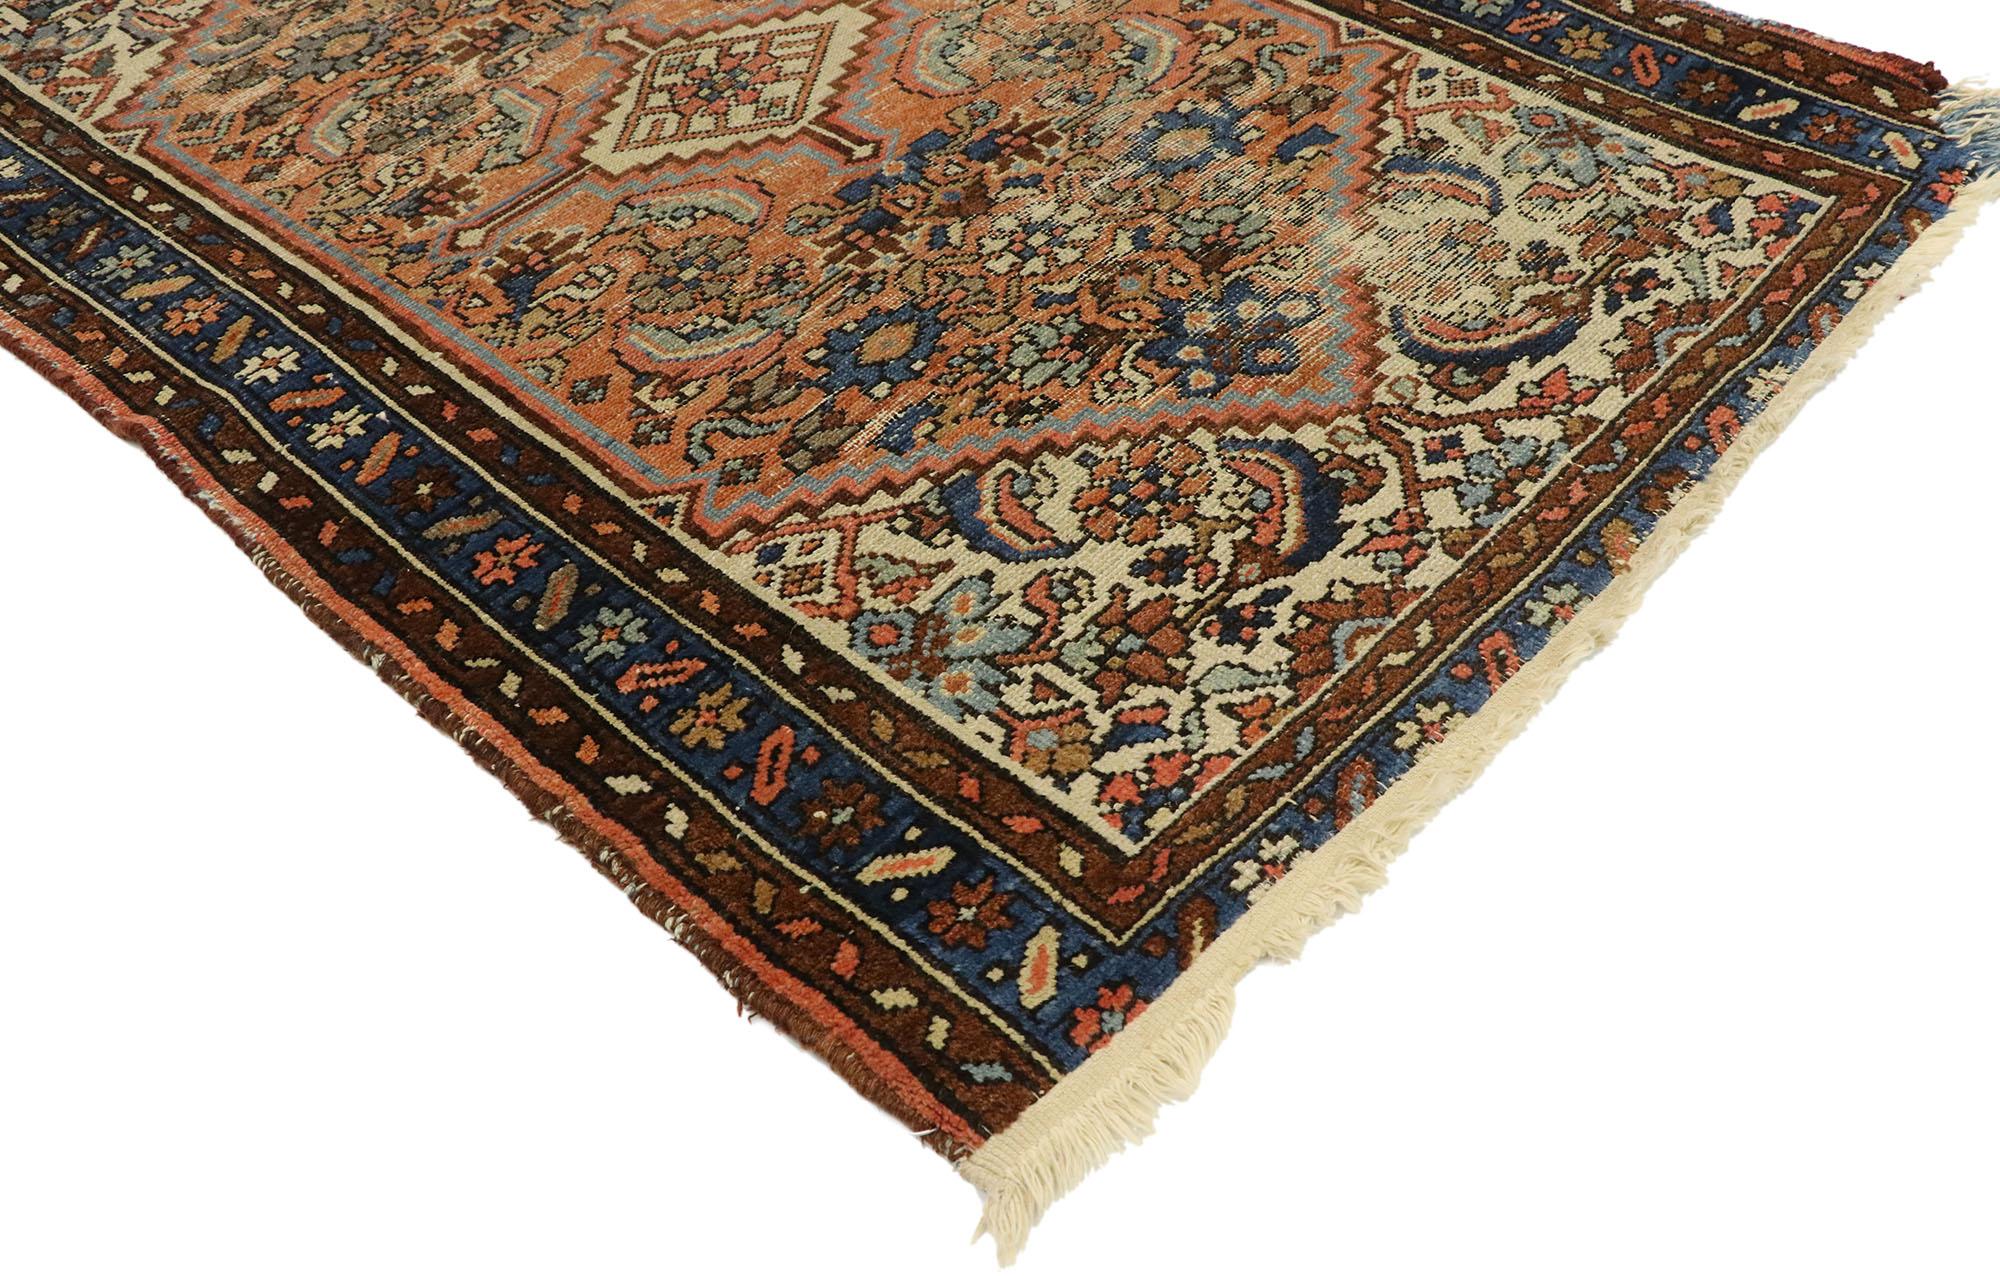 74912, tapis d'accentuation Persan Hamadan antique et vieilli, de style industriel romantique. Dégageant une grâce exquise et une composition amoureusement usée par le temps, ce tapis persan ancien en laine nouée à la main est la quintessence du